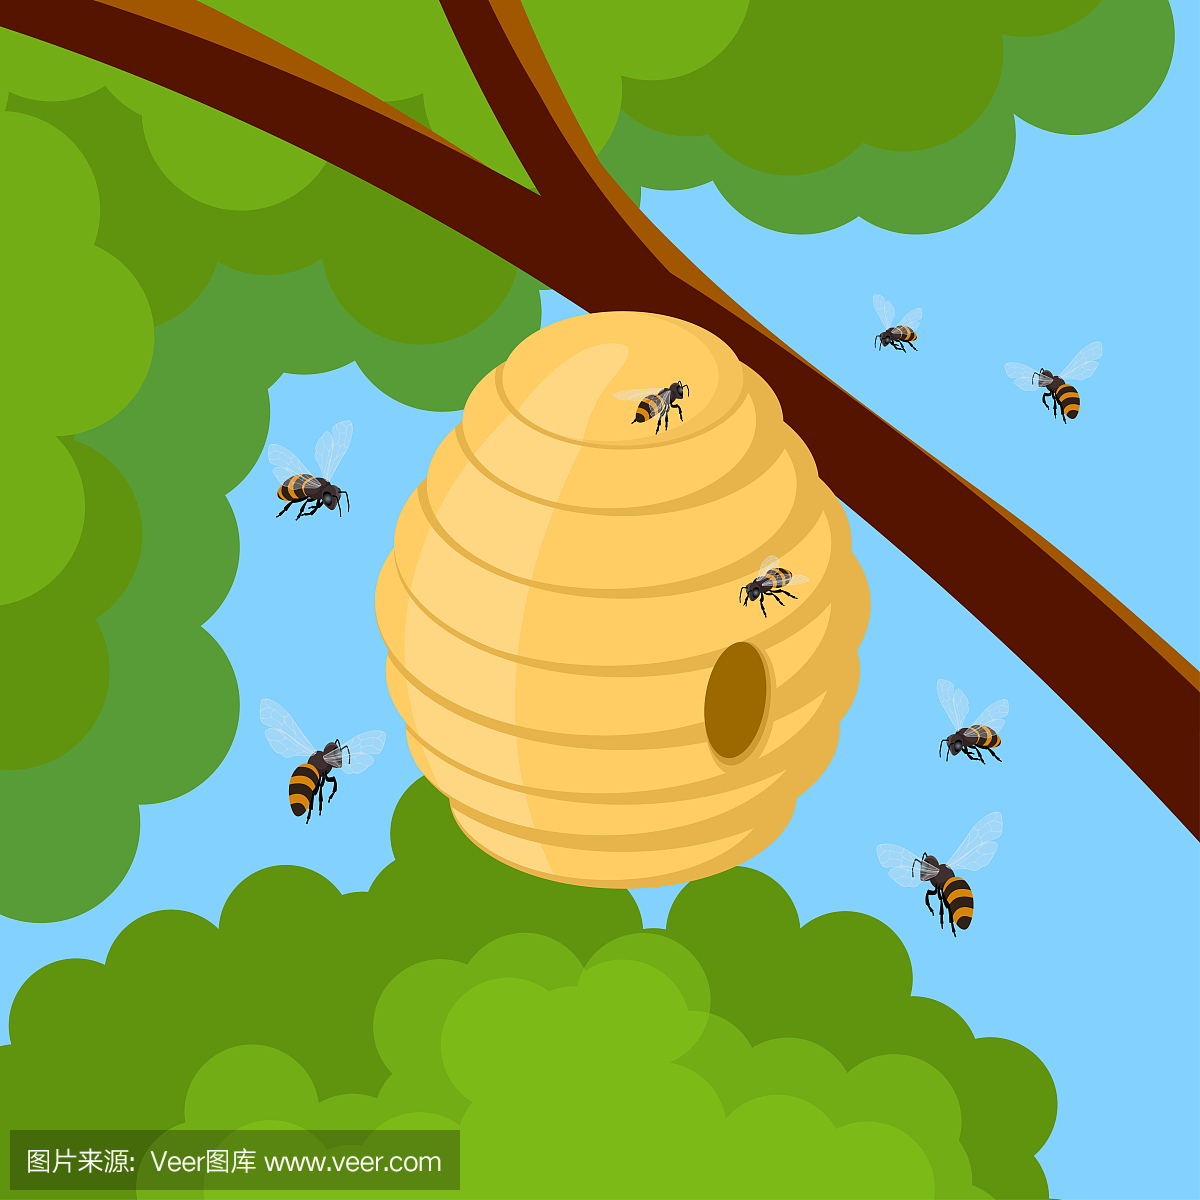 蜂蜜蜂和蜂巢在树枝上。蜂房子与圆形入口的矢